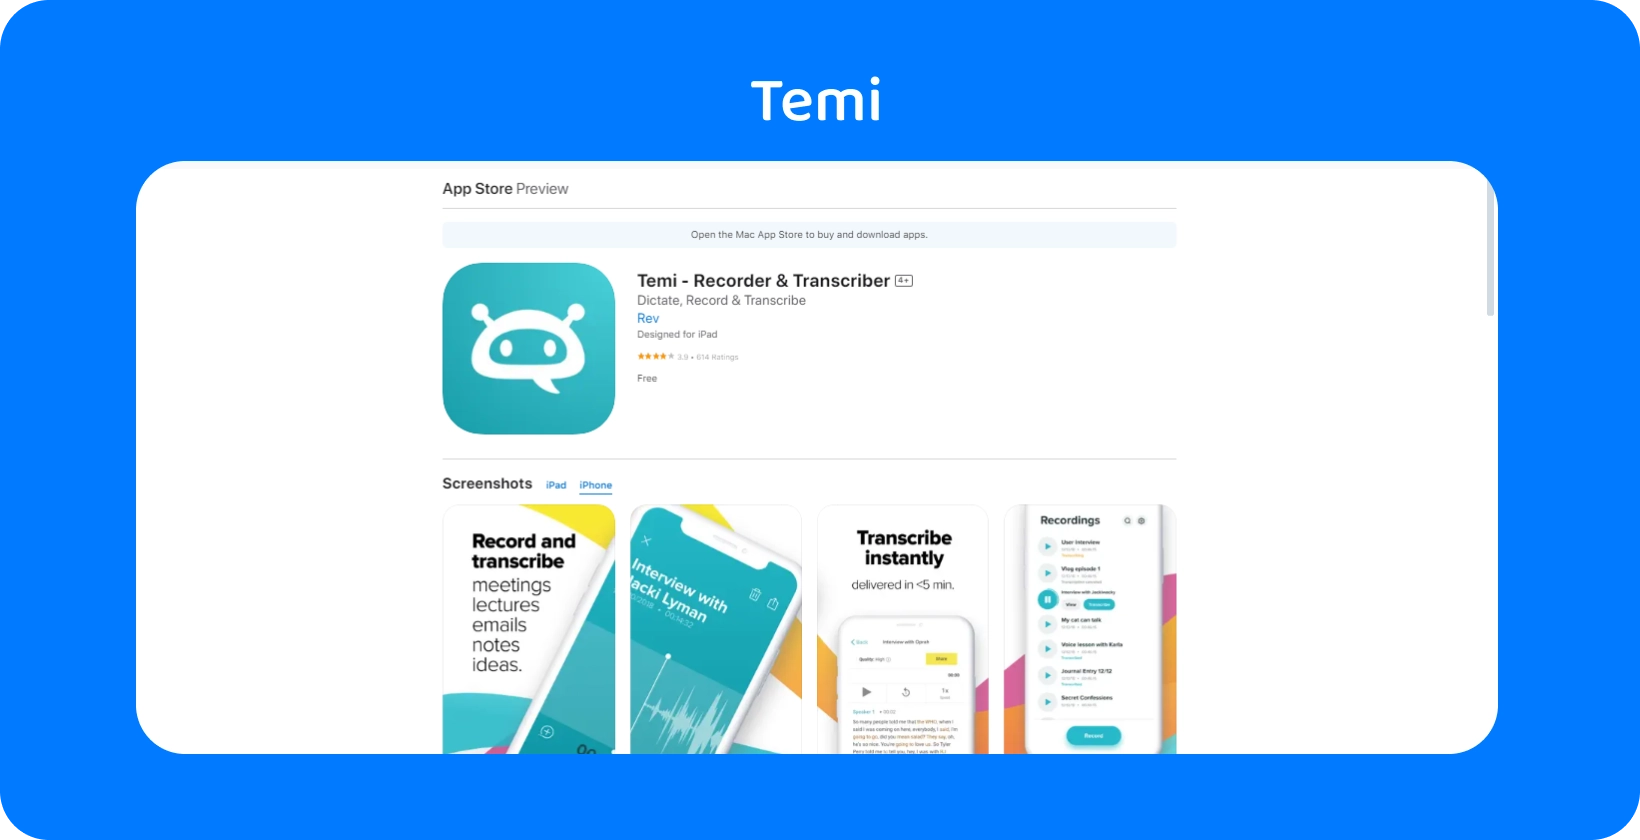 Zrzut ekranu przedstawiający listę Temi App Store, podkreślający funkcje szybkiego nagrywania i natychmiastowej transkrypcji.